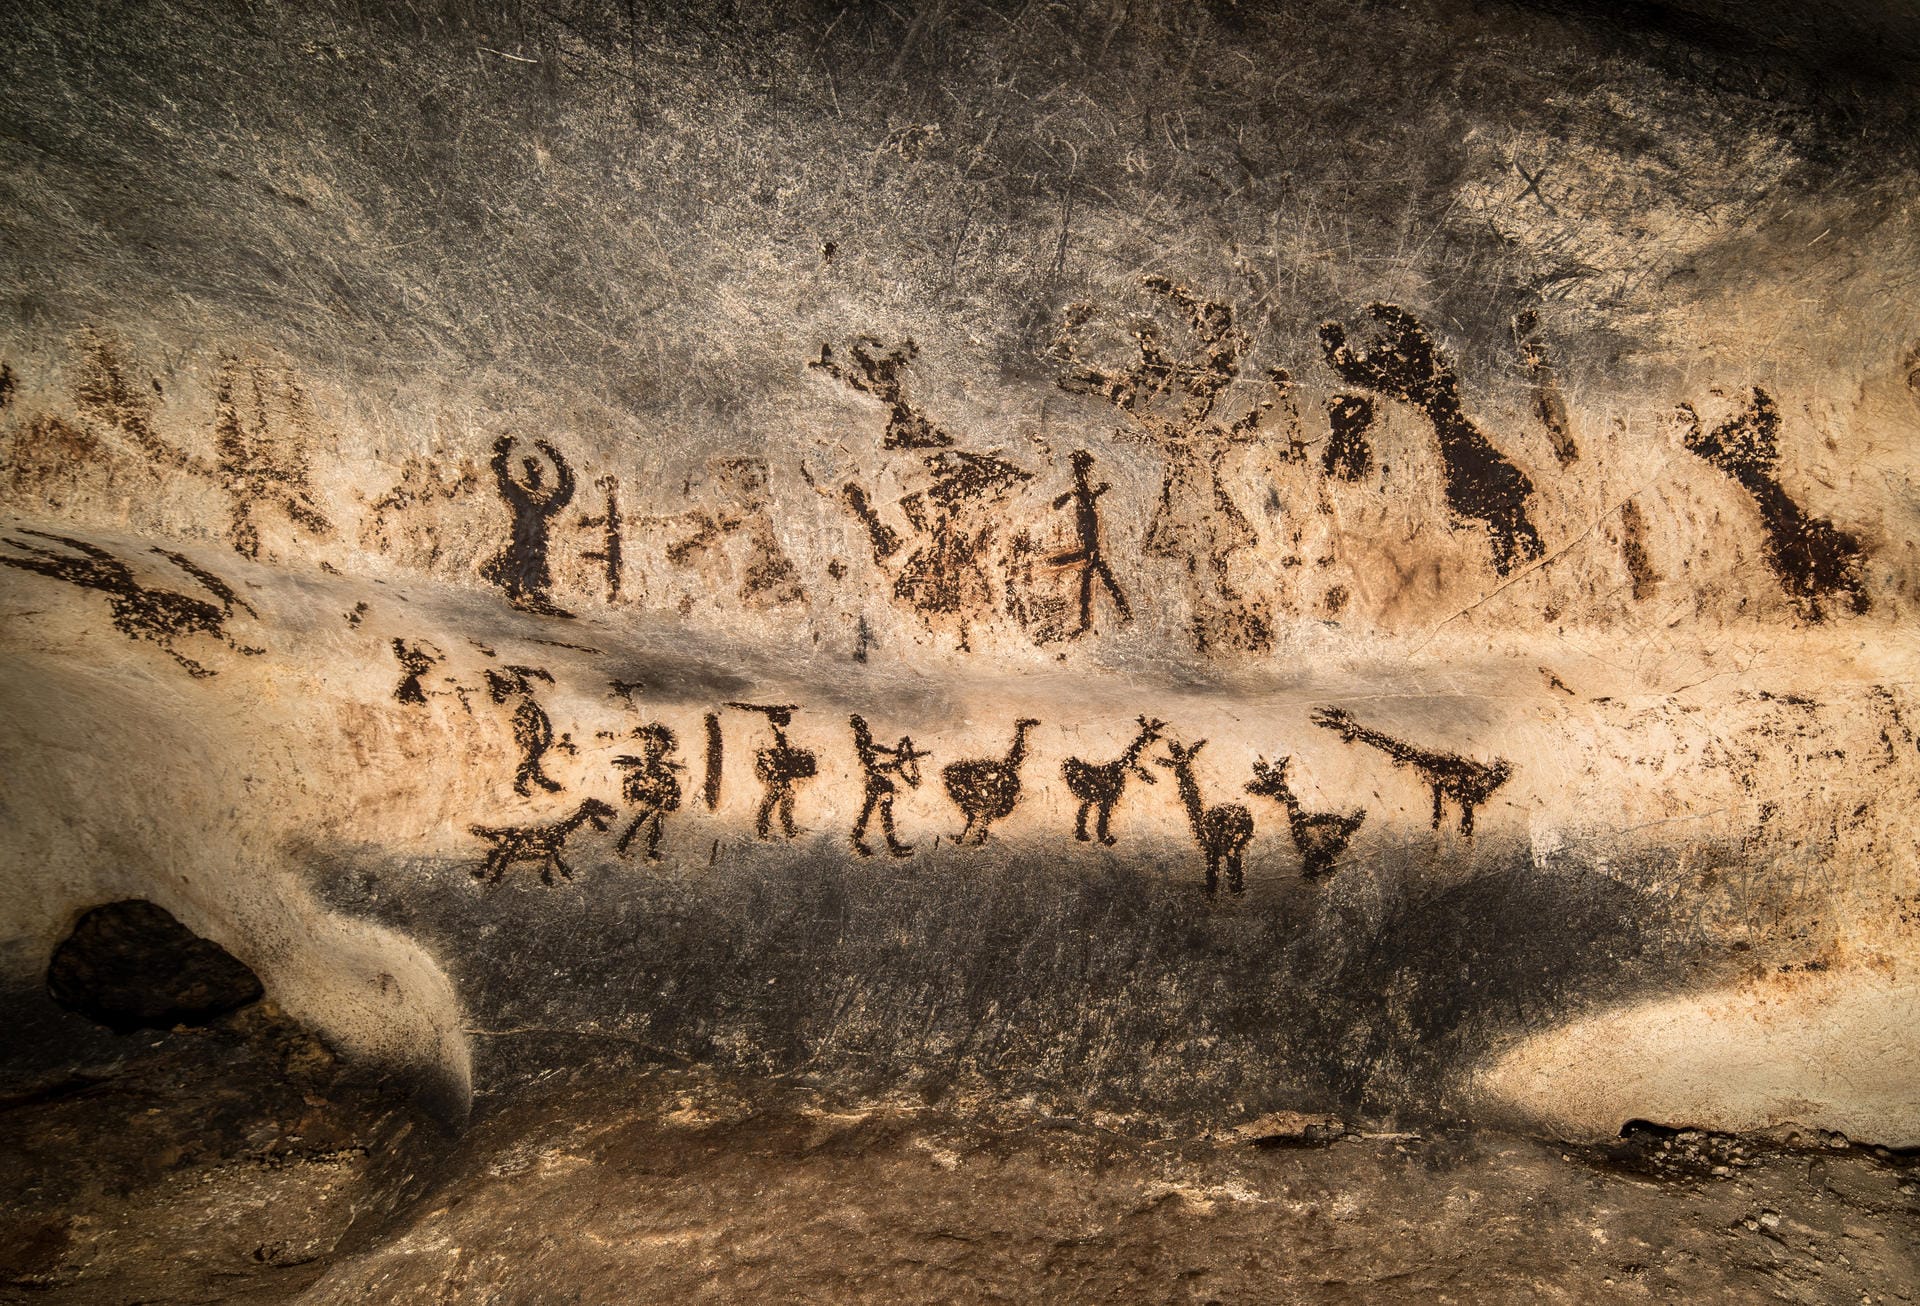 Chauvet-Höhle: Über 400 Wandbilder mit 1.000 Tier- und Symboldarstellungen wurden in der Chauvet-Höhle vor über 30.000 Jahren gemalt.